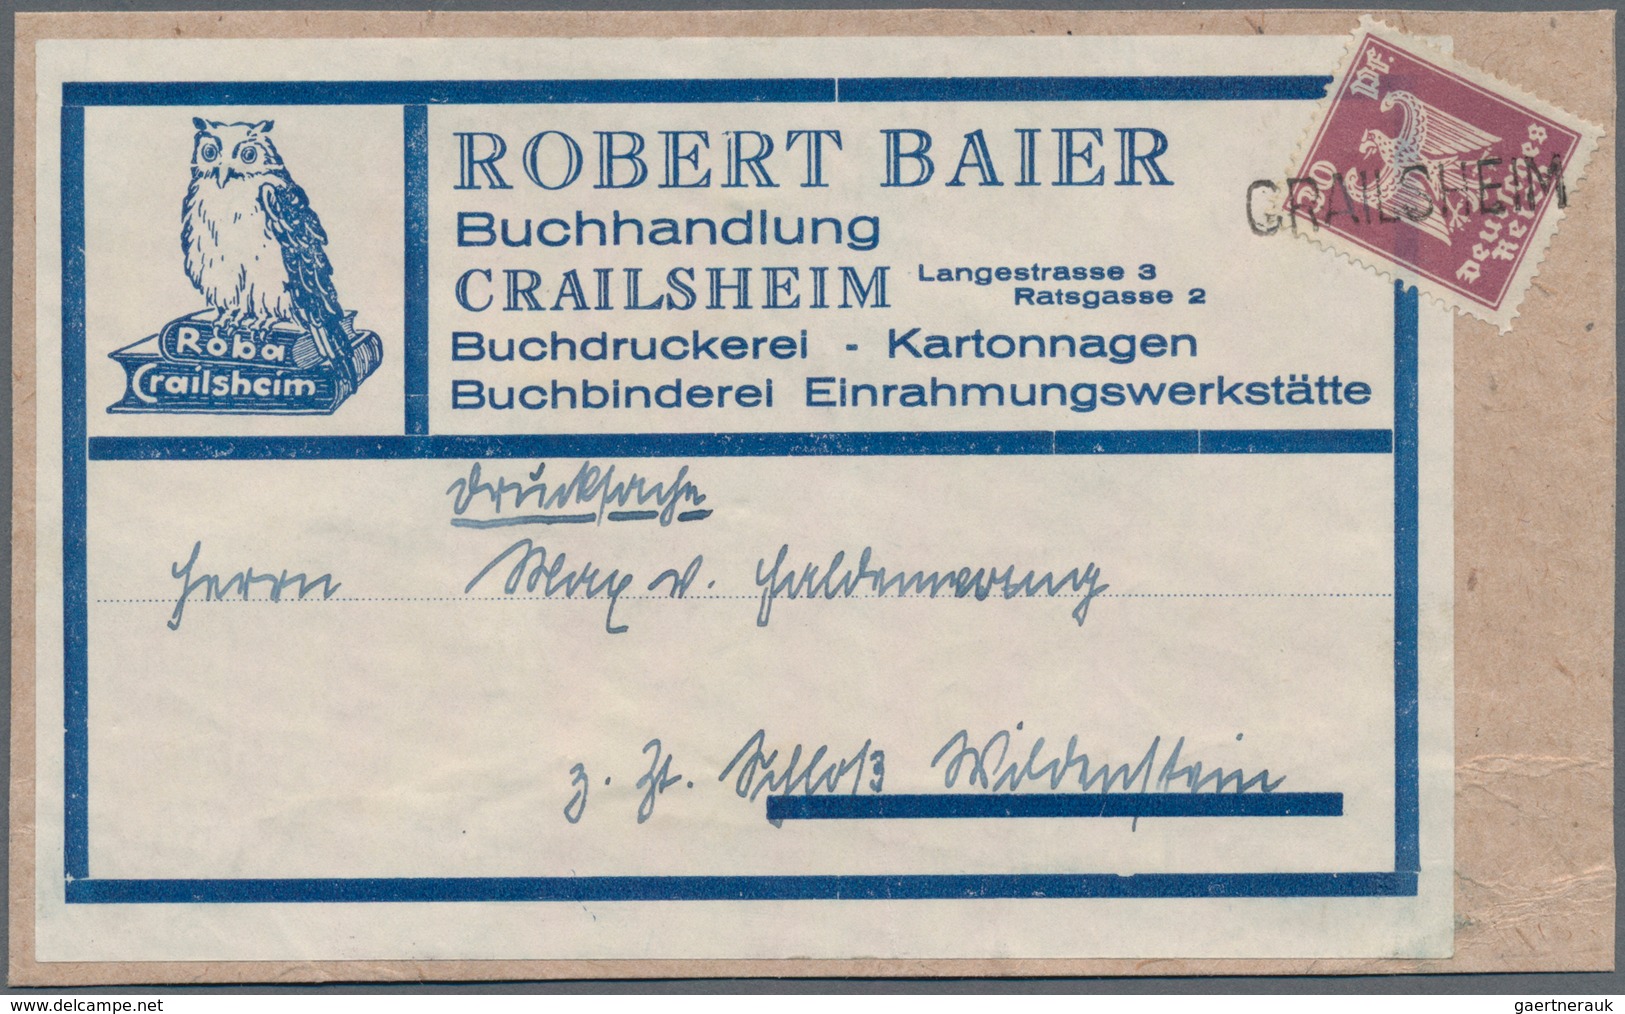 Deutsches Reich: 1872/1935 ca., DRUCKSACHEN, reichhaltiger Sammlungsbestand mit ca.200 Belegen ab Br